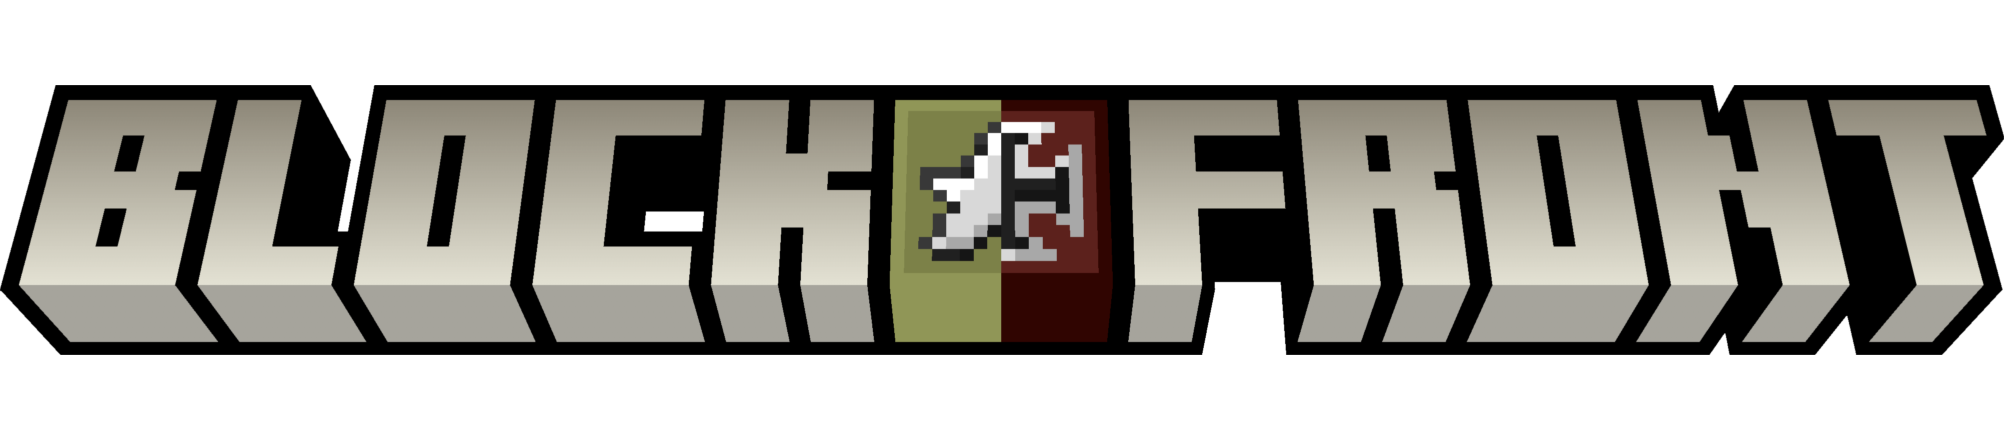 The official BlockFront logo.